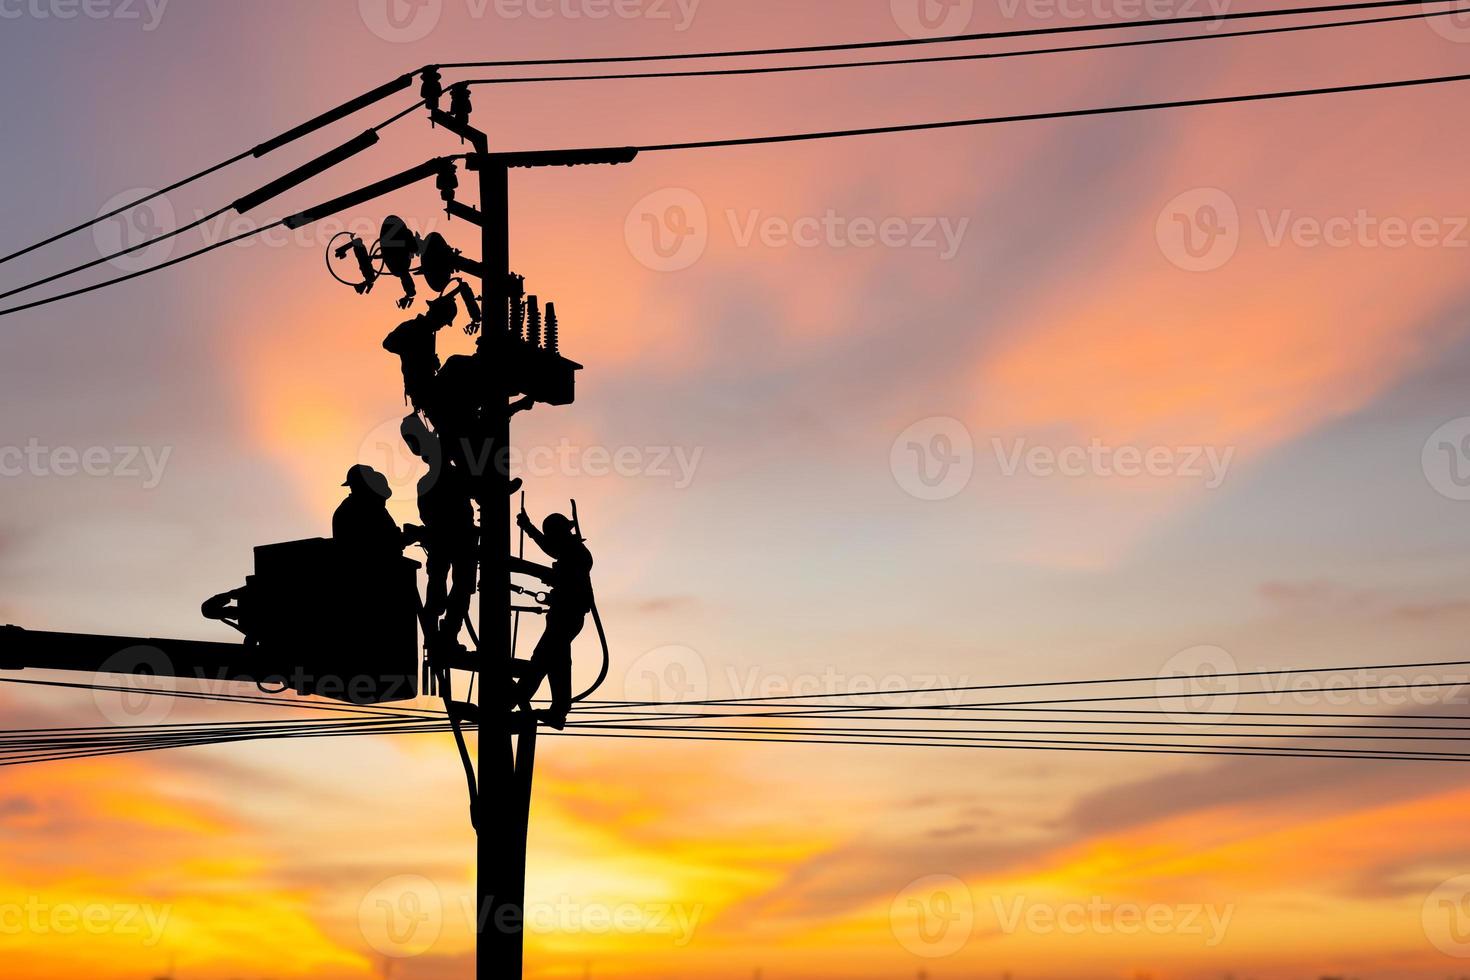 silhouet van elektricien officier klimt een paal en gebruikt een kabelbaan om een hoogspanningslijnsysteem te onderhouden, schaduw van elektricien lijnwachter reparateur werknemer bij klimwerk op elektrische post elektriciteitspaal foto